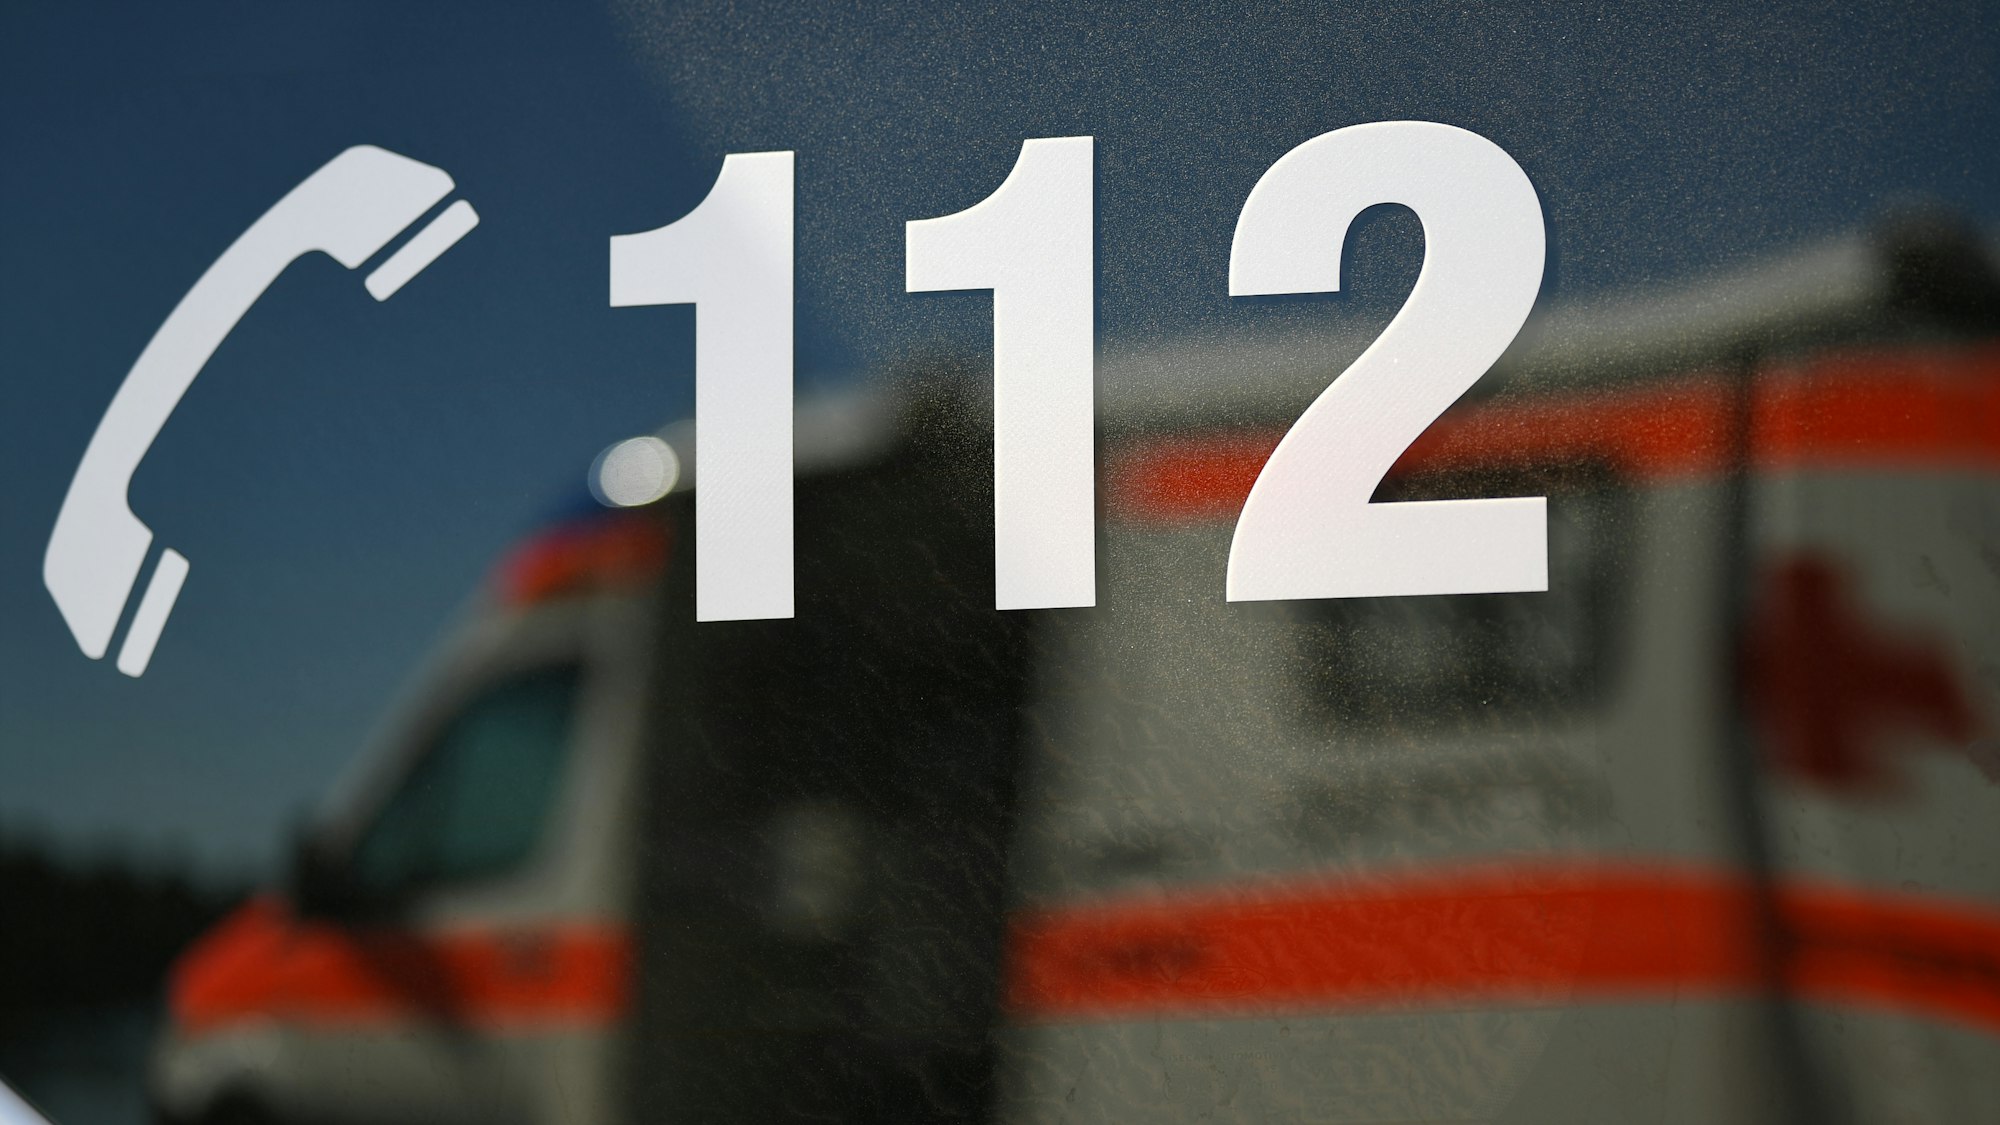 Ein Rettungswagen spiegelt während einer Übung in einem Fenster eines anderen Rettungswagen mit der Aufschrift "112".